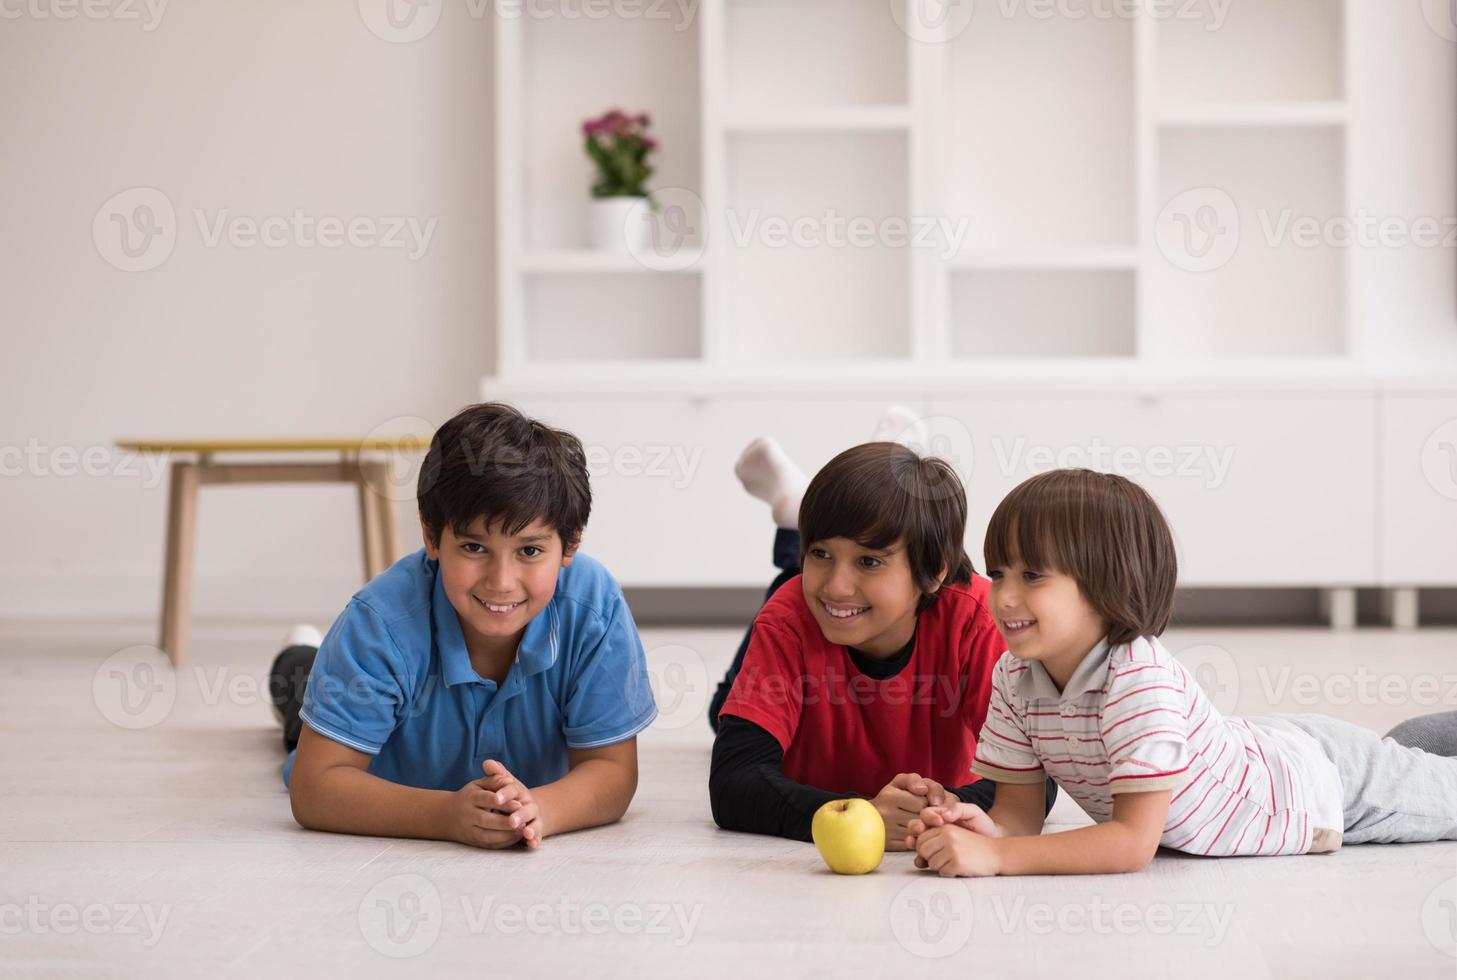 chicos divirtiéndose con una manzana en el suelo foto